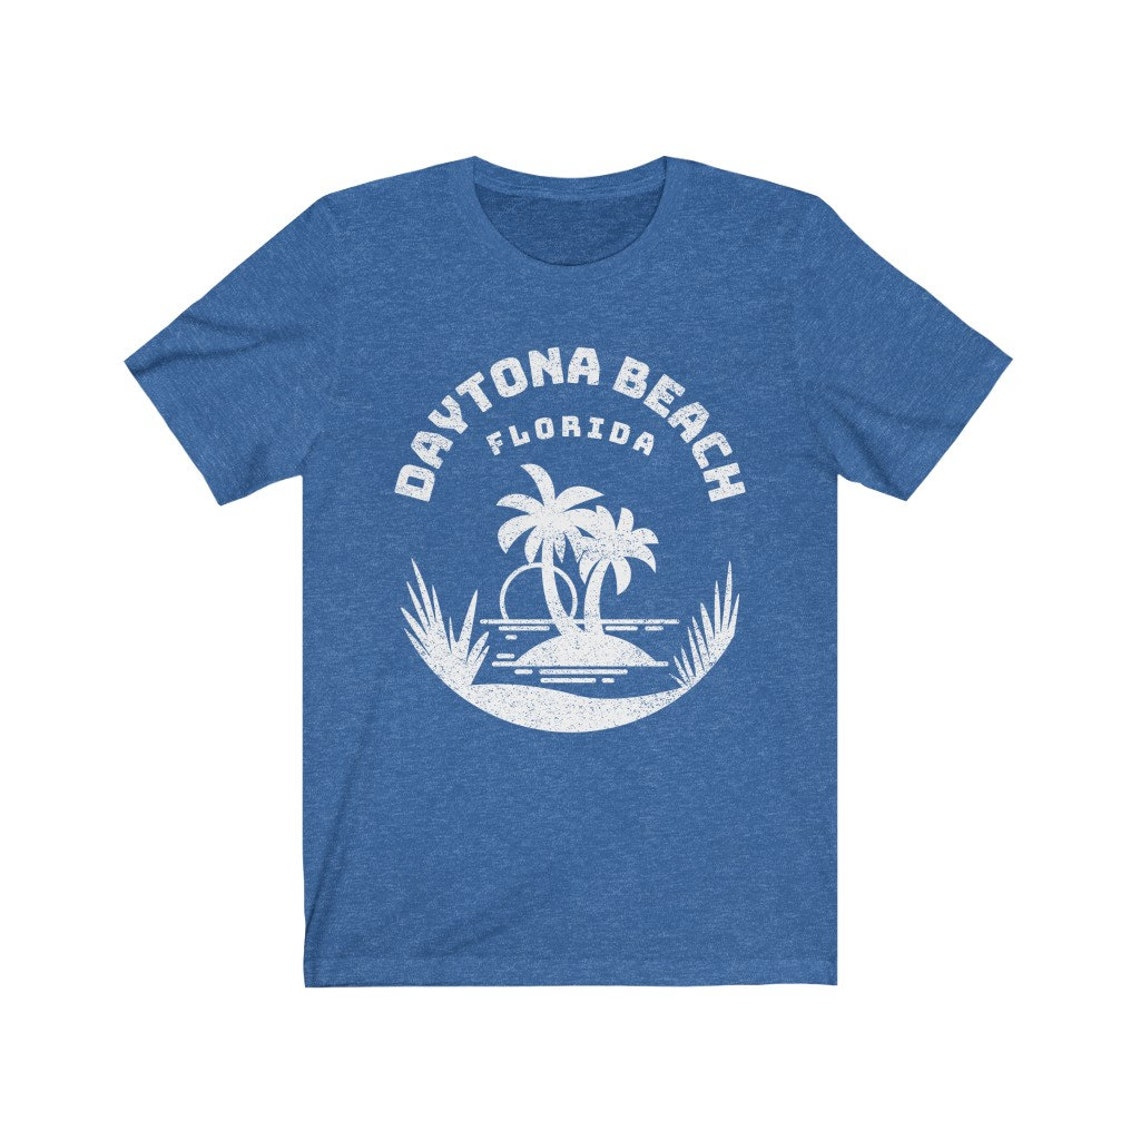 Daytona Beach Shirt Daytona Beach Gift Daytona Beach FL | Etsy